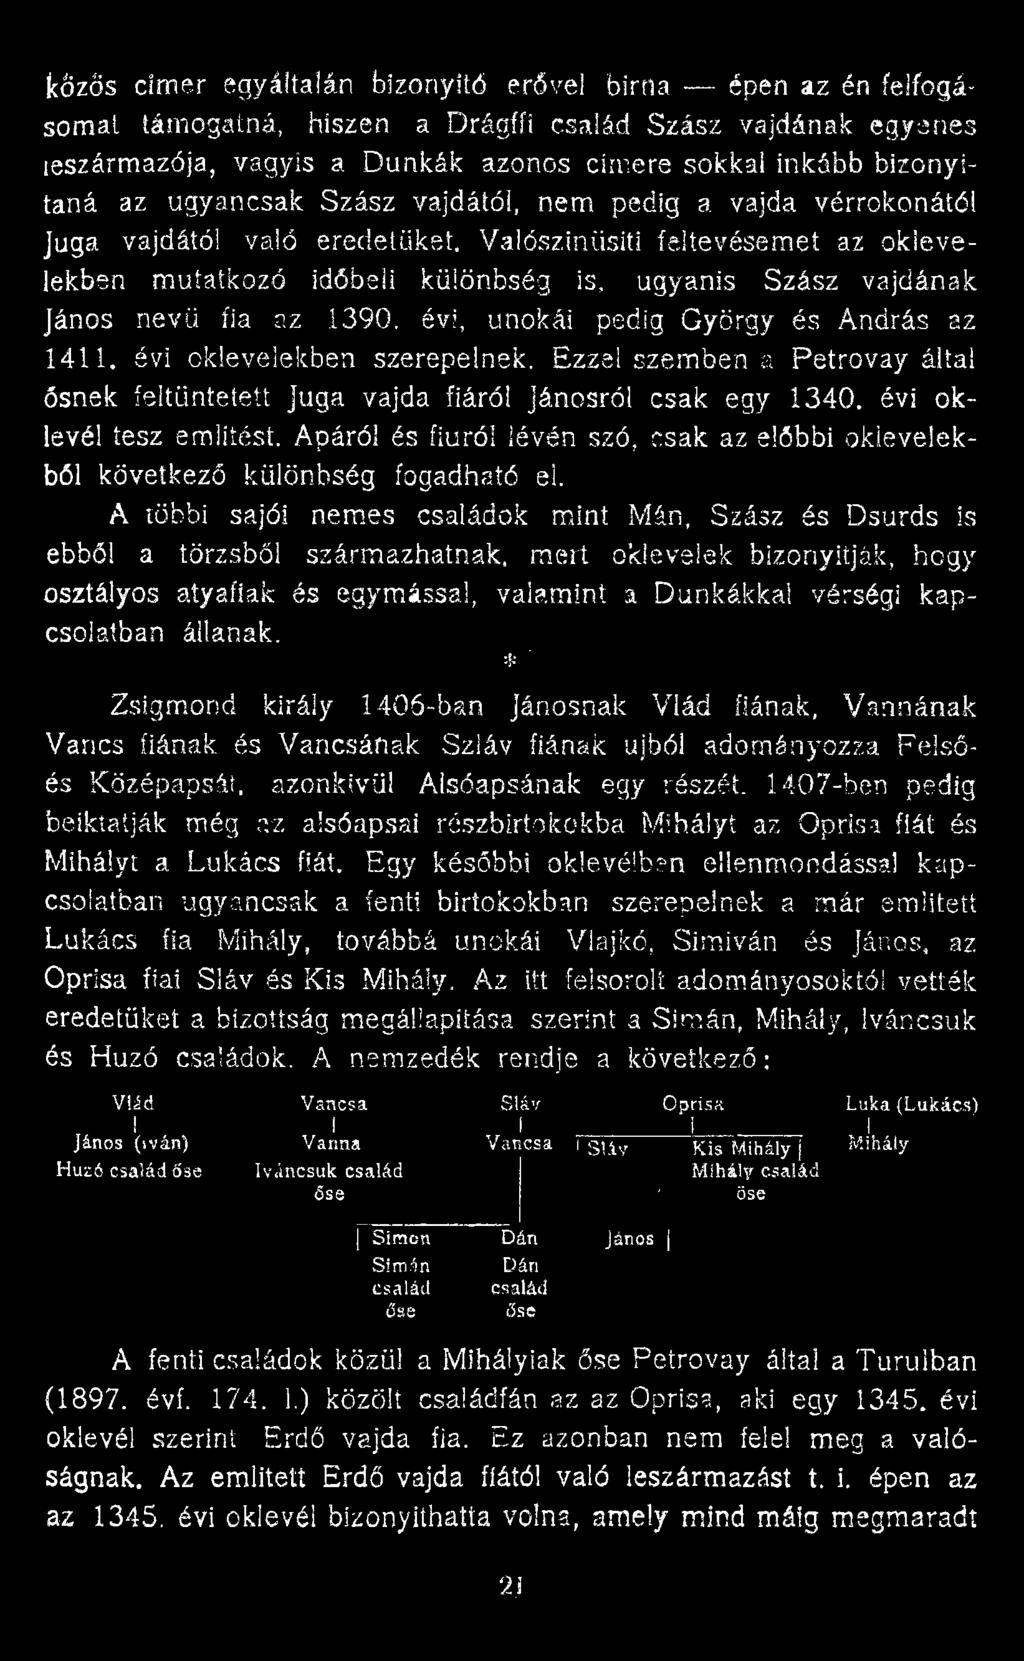 Valószínűsíti feltevésemet az oklevelekben mutatkozó időbeli különbség is, ugyanis Szász vajdának János nevű fia az Í39Q. évi, unokái pedig György és András az 1411. évi oklevelekben szerepelnek.